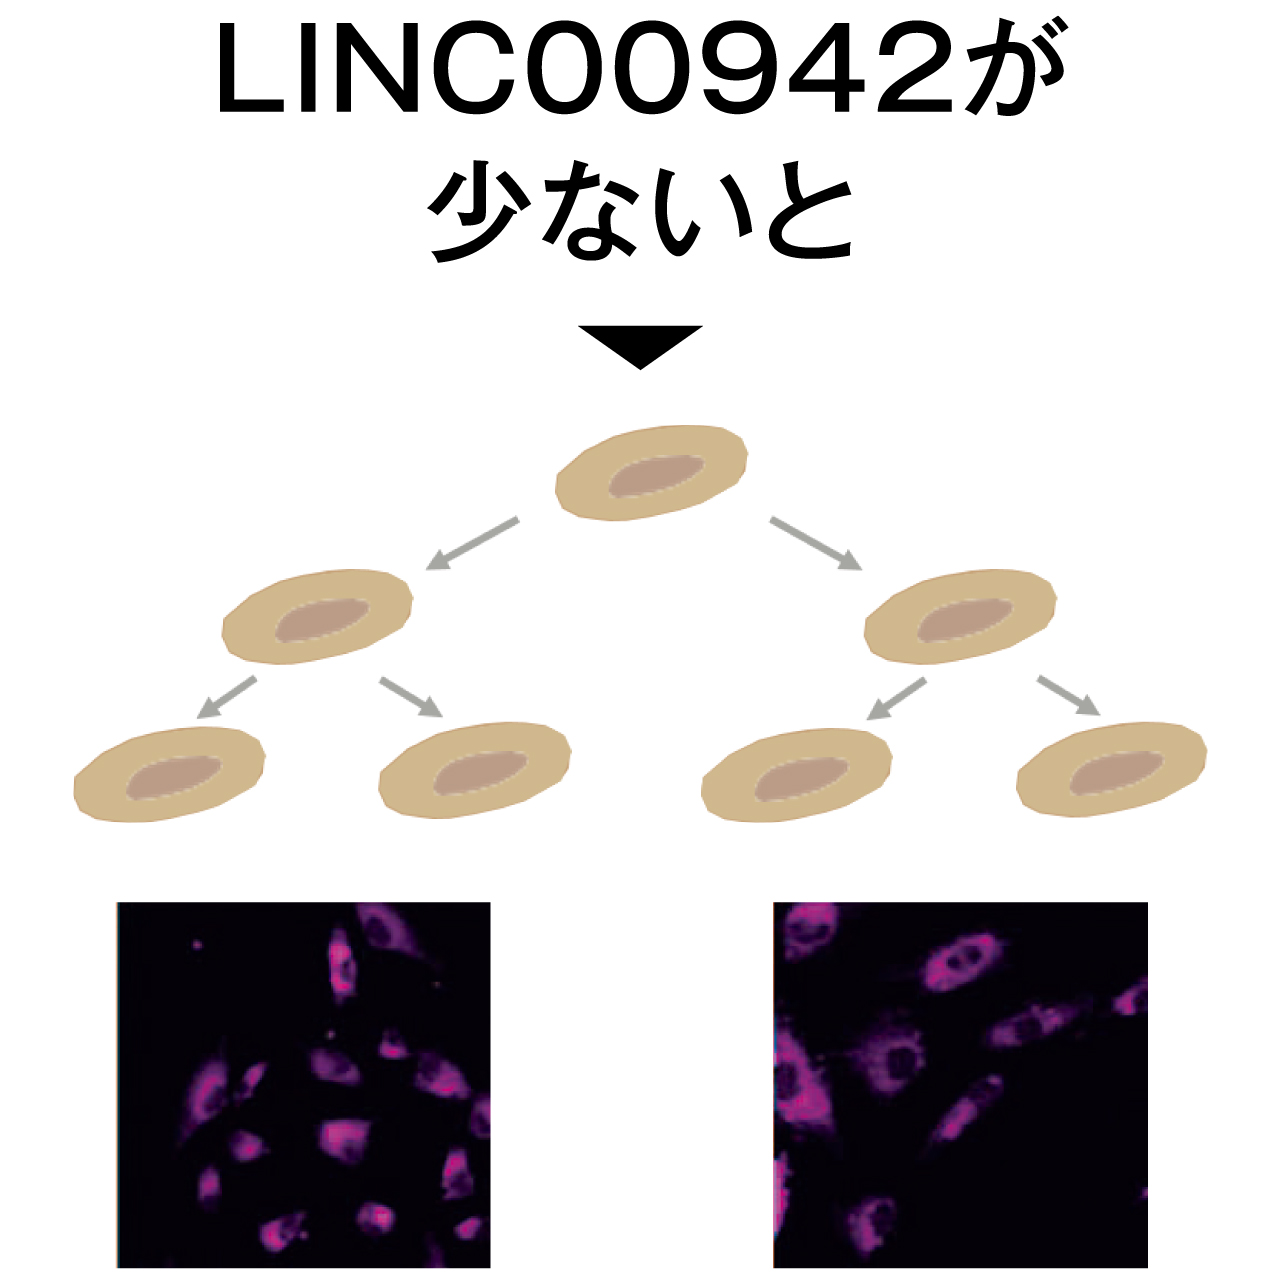 LINC00942が少ない状態で、エイジング細胞が増える様子